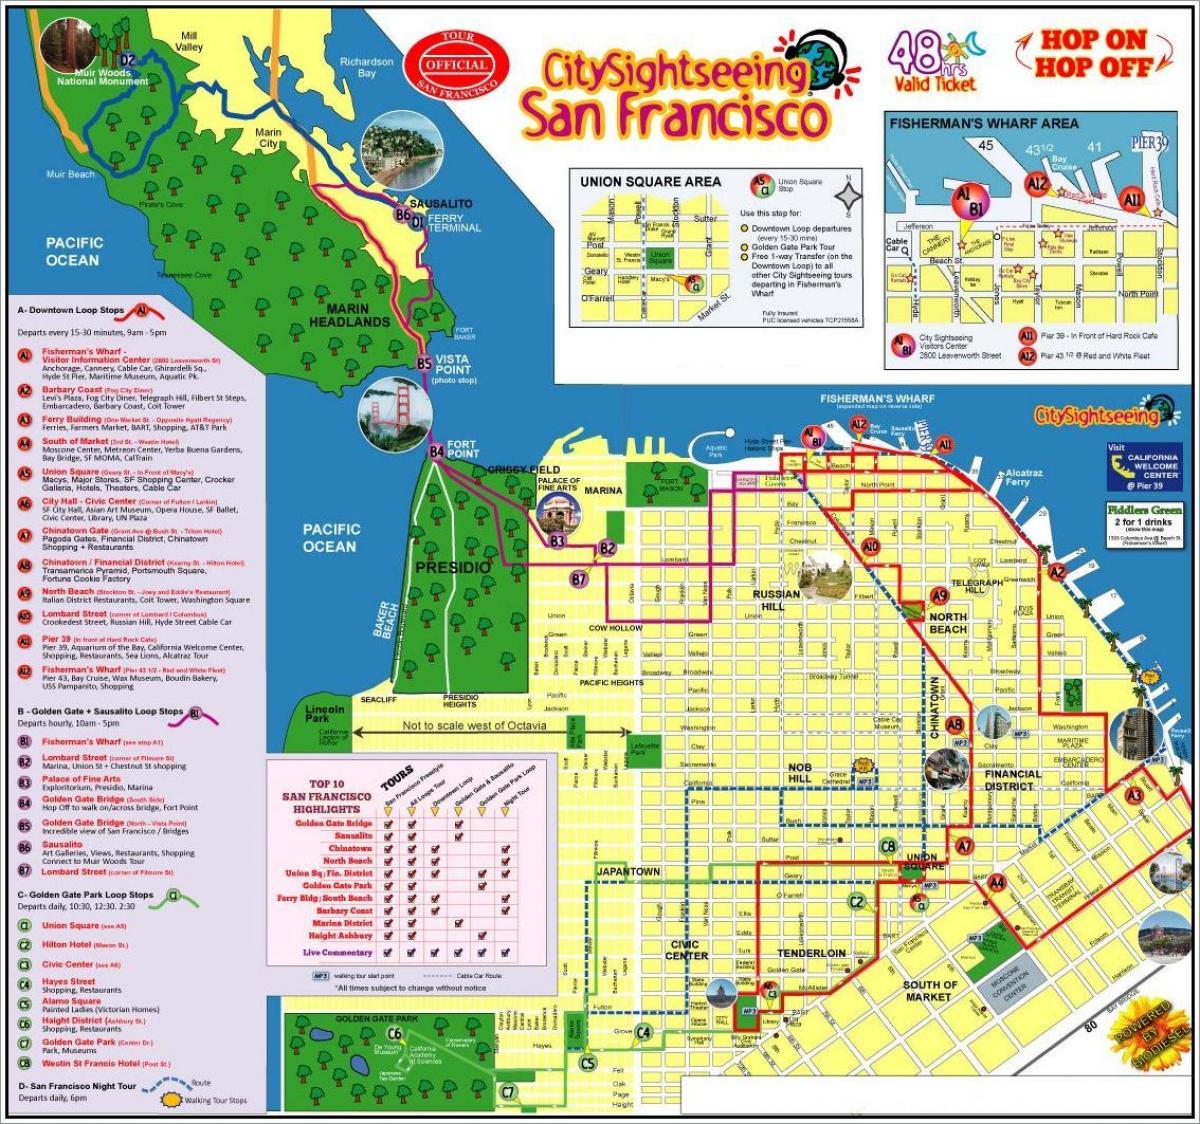 San Francisco hop on hop off bus tour mapu